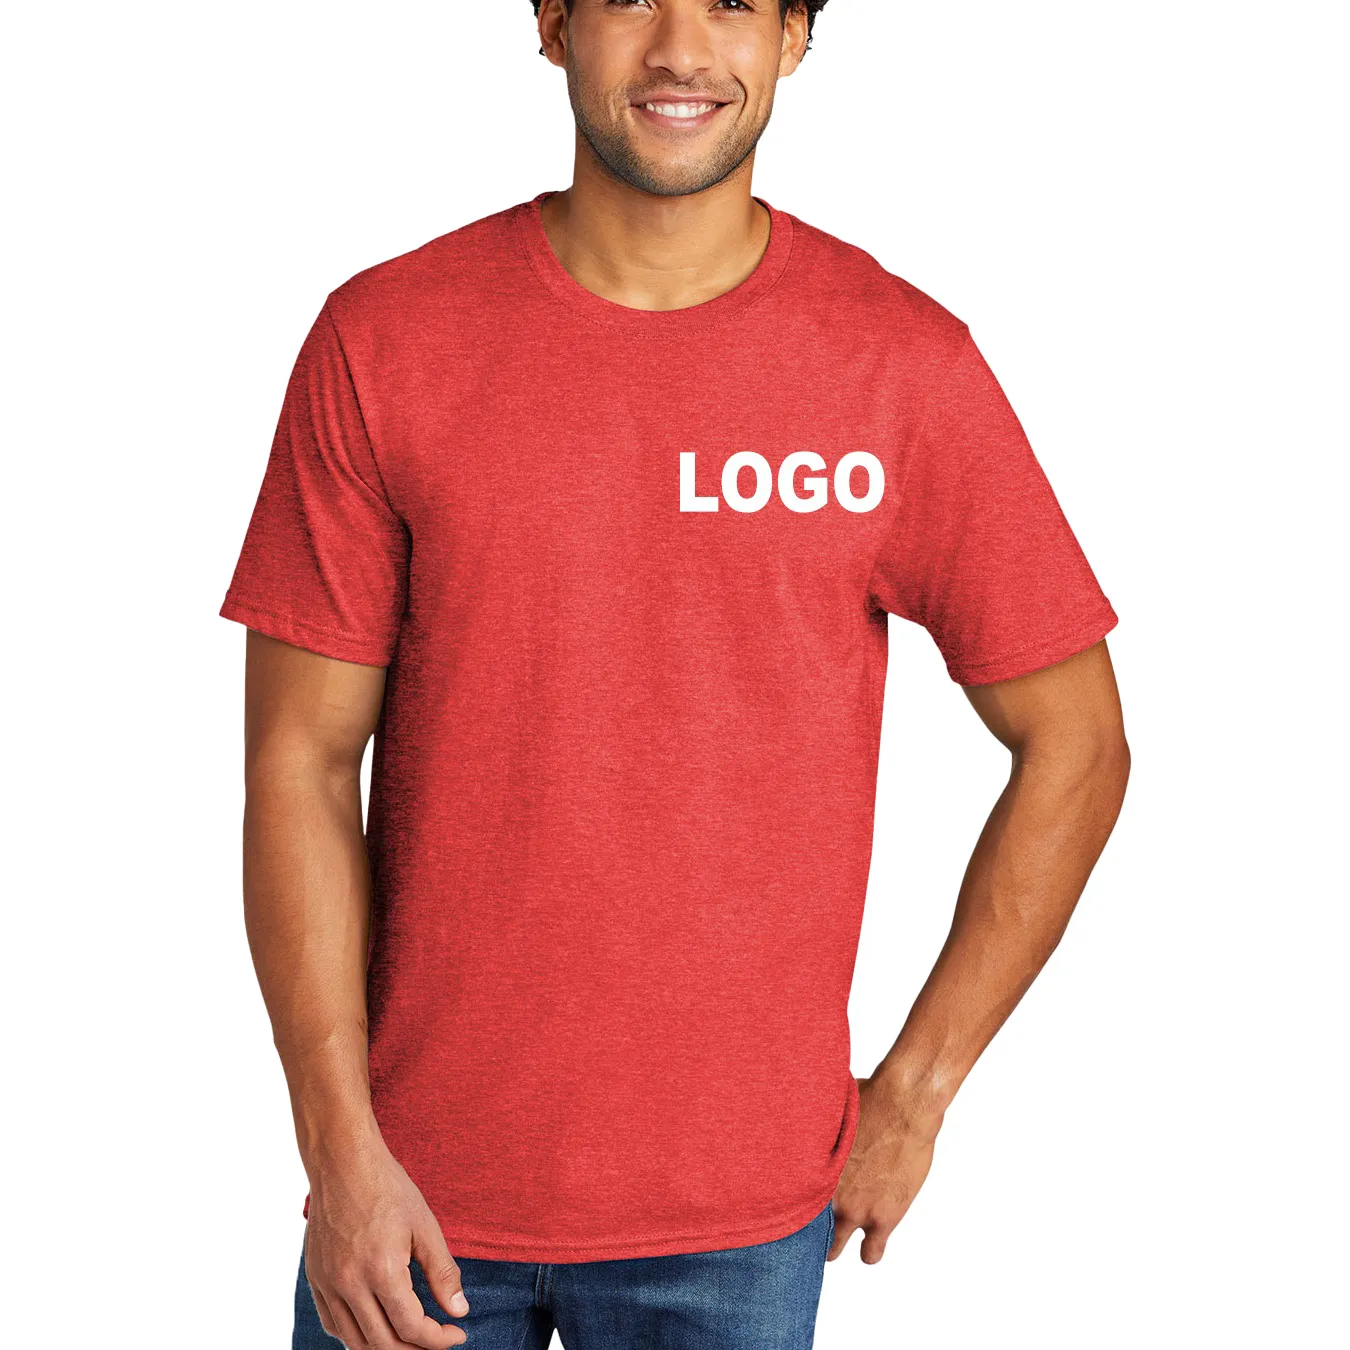 Camiseta de gran tamaño con logotipo personalizado, camiseta transpirable ligera, precio barato, alta calidad